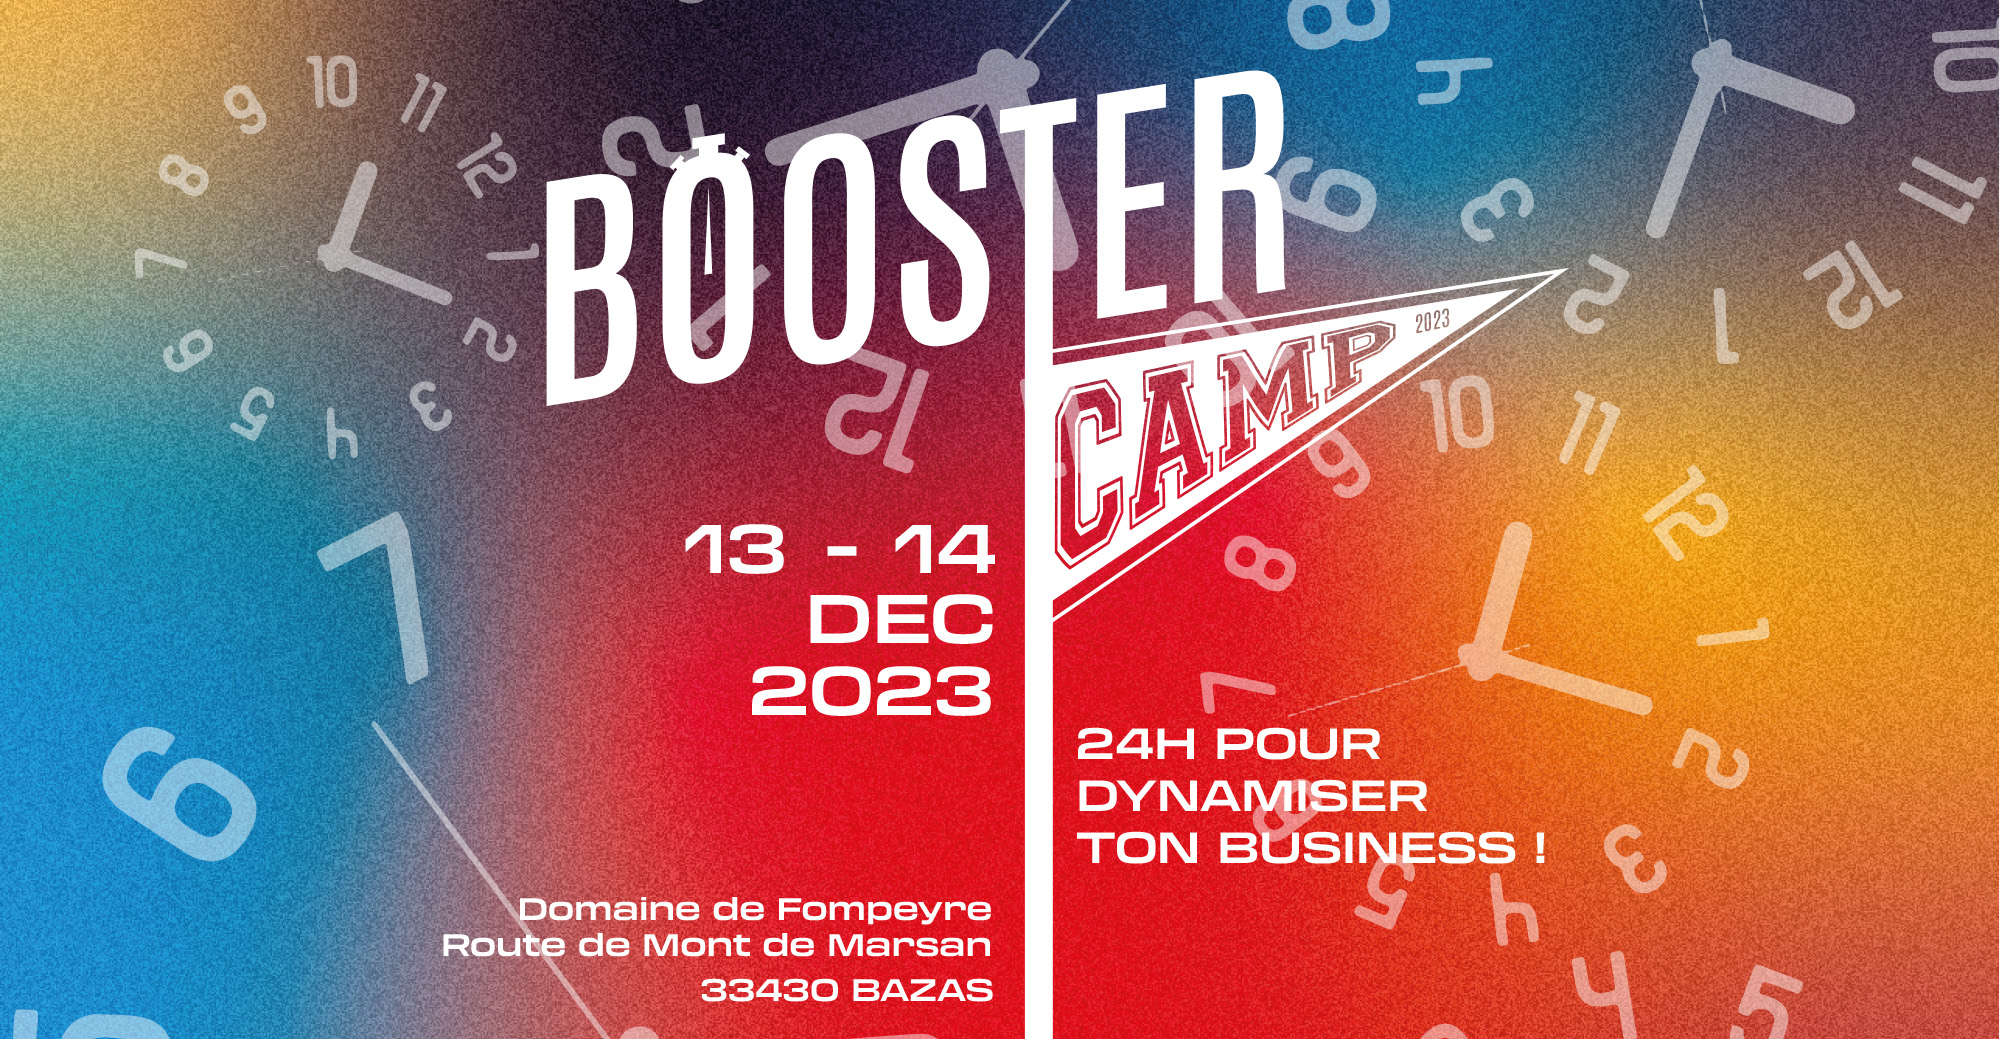 Boostercamp 2023, 12 - 13 DEC 2023, Moulin de l'Abbaye LA COURONNE (16), 24h pour dynamiser ton business !